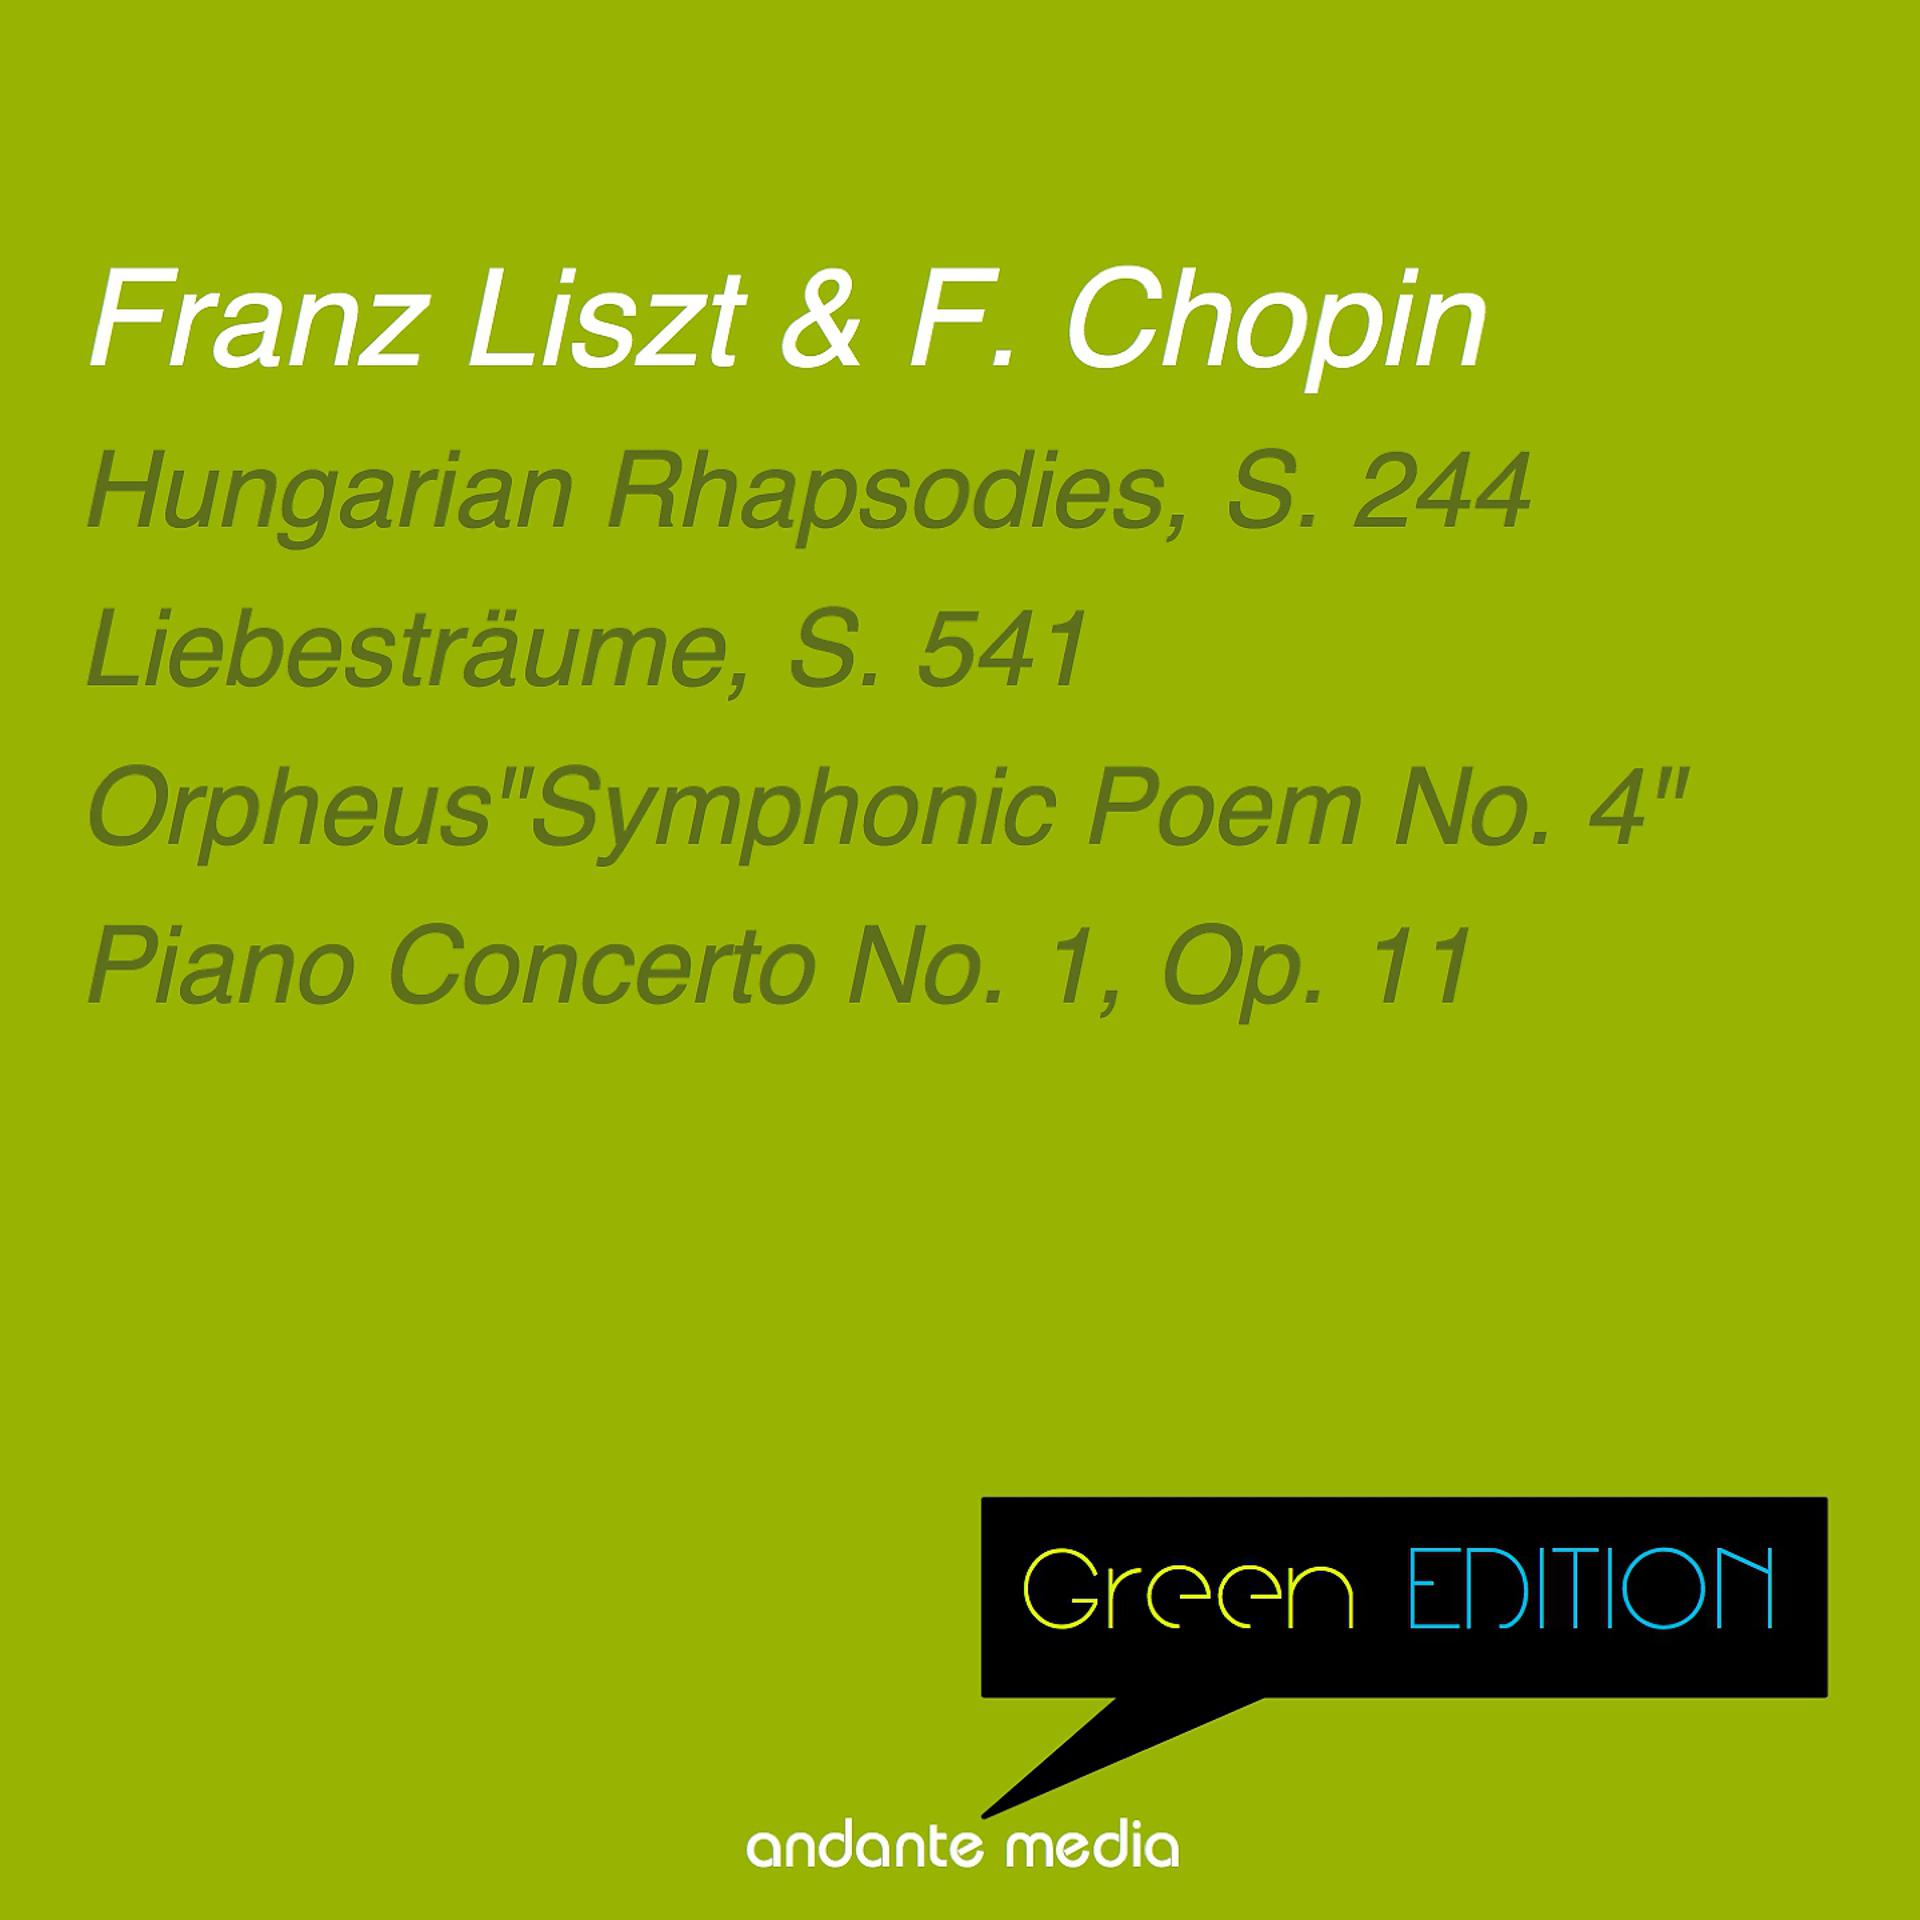 Постер альбома Green Edition - Liszt & Chopin: Orpheus "Symphonic Poem No. 4" & Piano Concerto No. 1, Op. 11